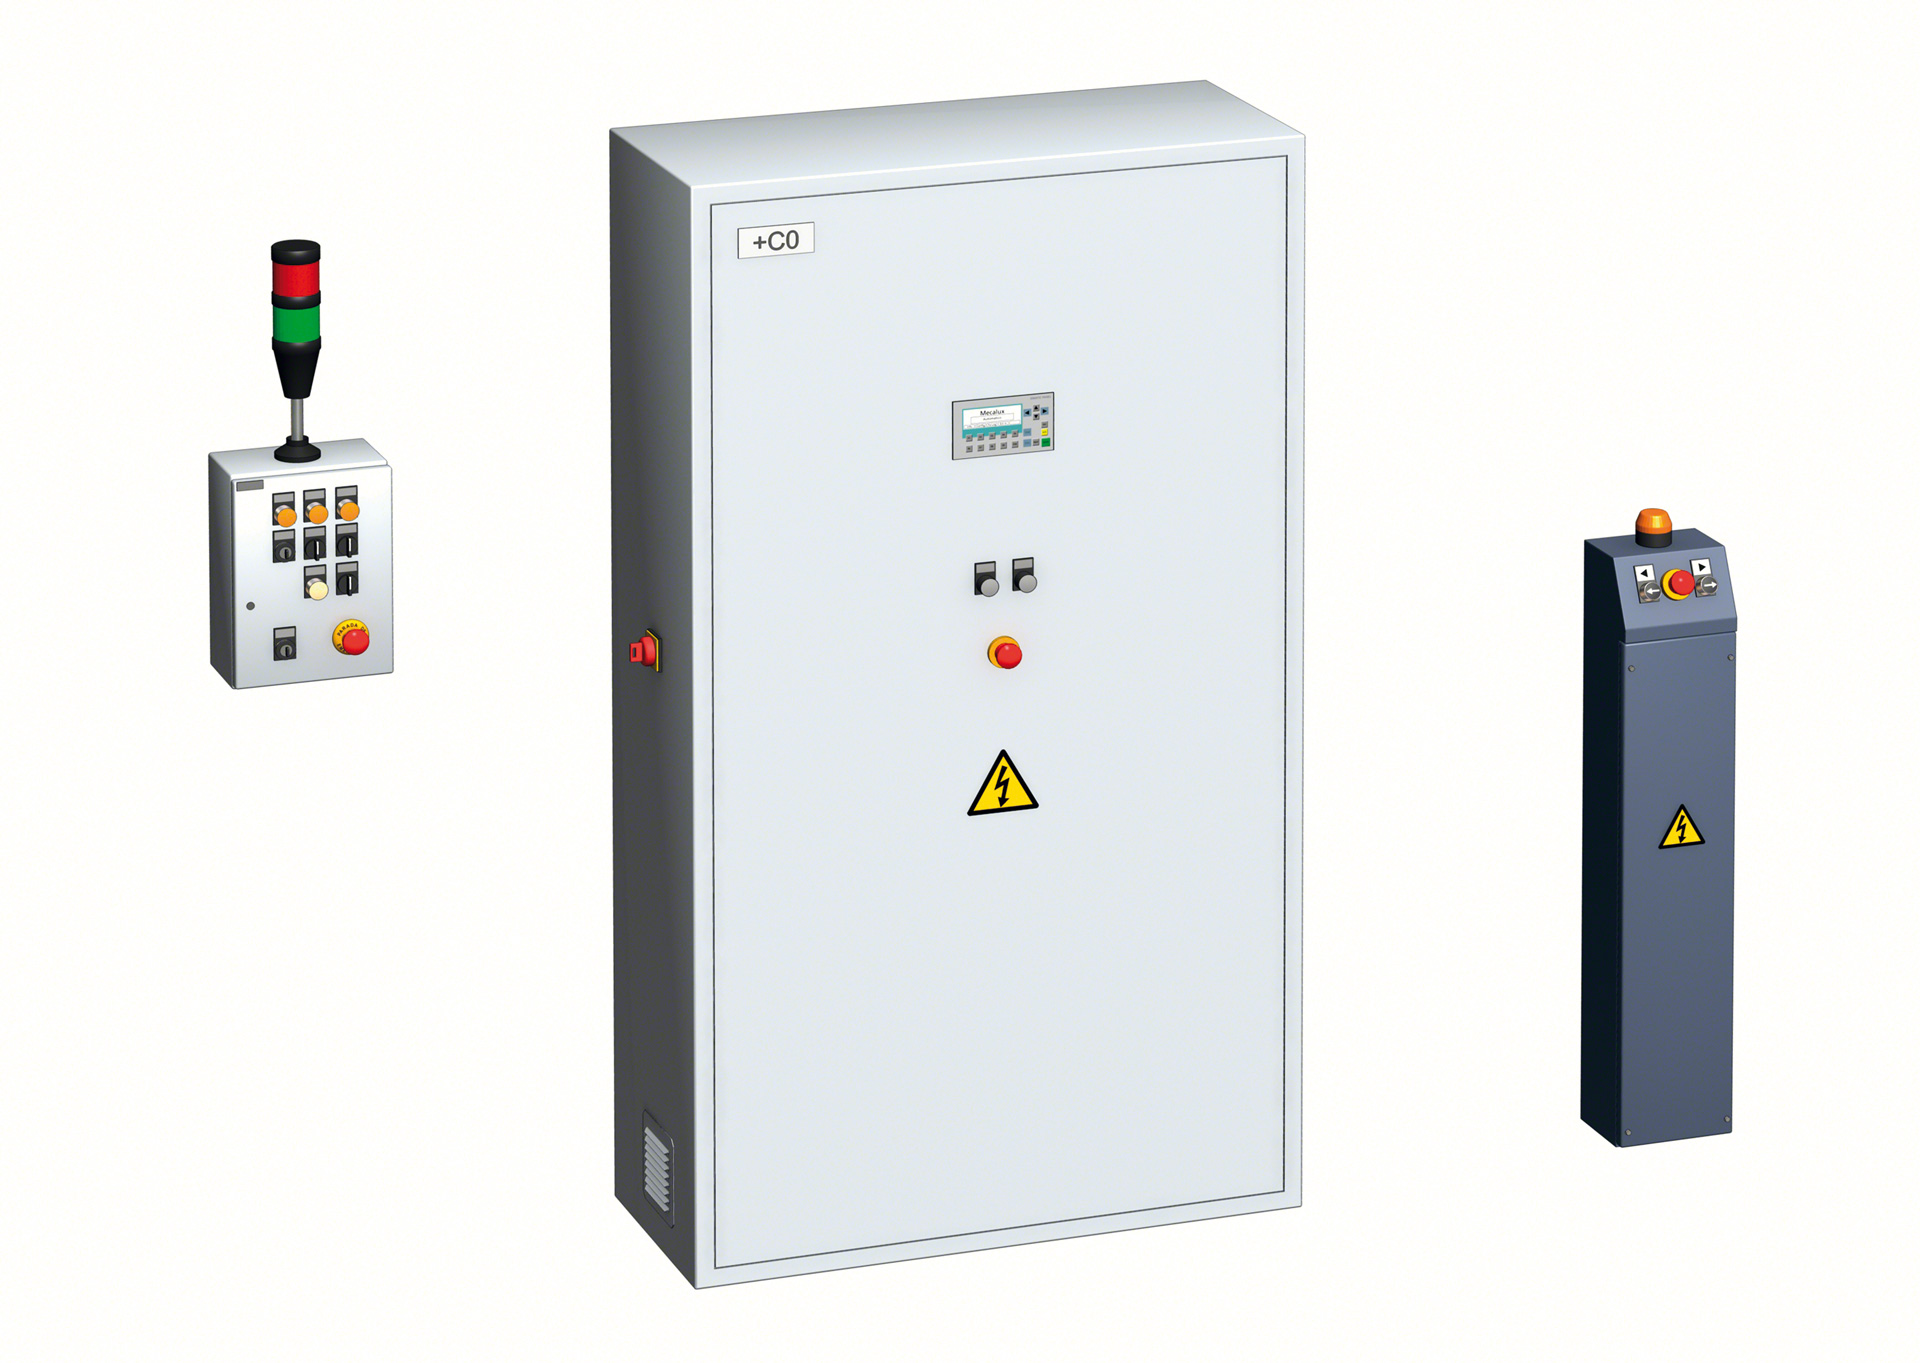 System sterowania regałów mobilnych składa się z trzech elementów: głównej szafy sterowniczej, szaf regałowych oraz panelu kontrolnego